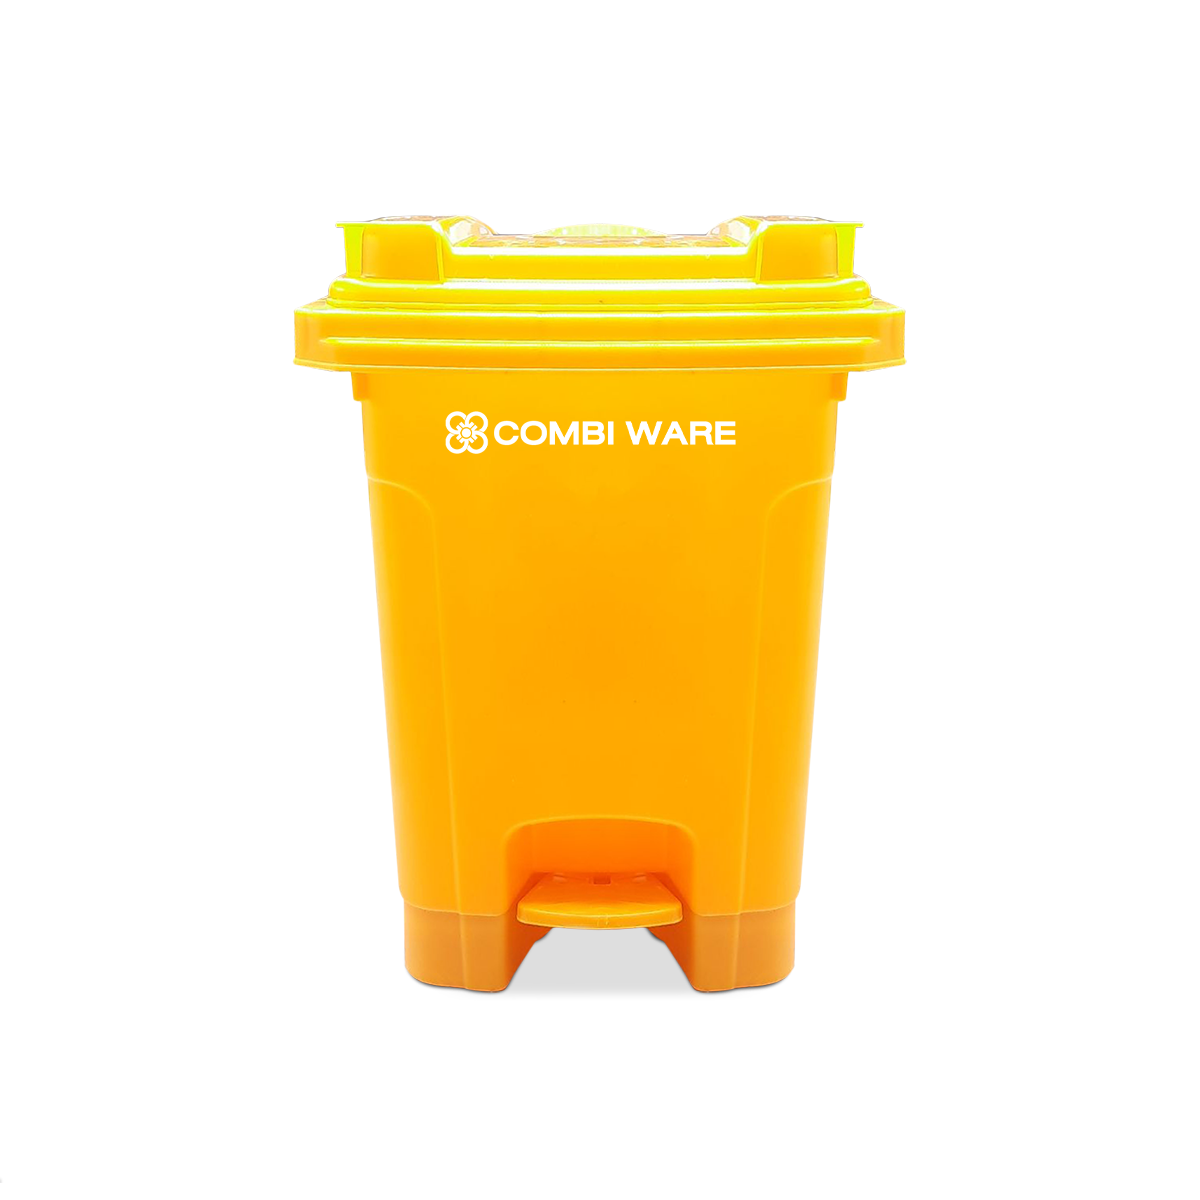 ถังขยะพลาสติก ขนาด 60 ลิตร แบบมีเท้าเหยียบ สีเหลือง